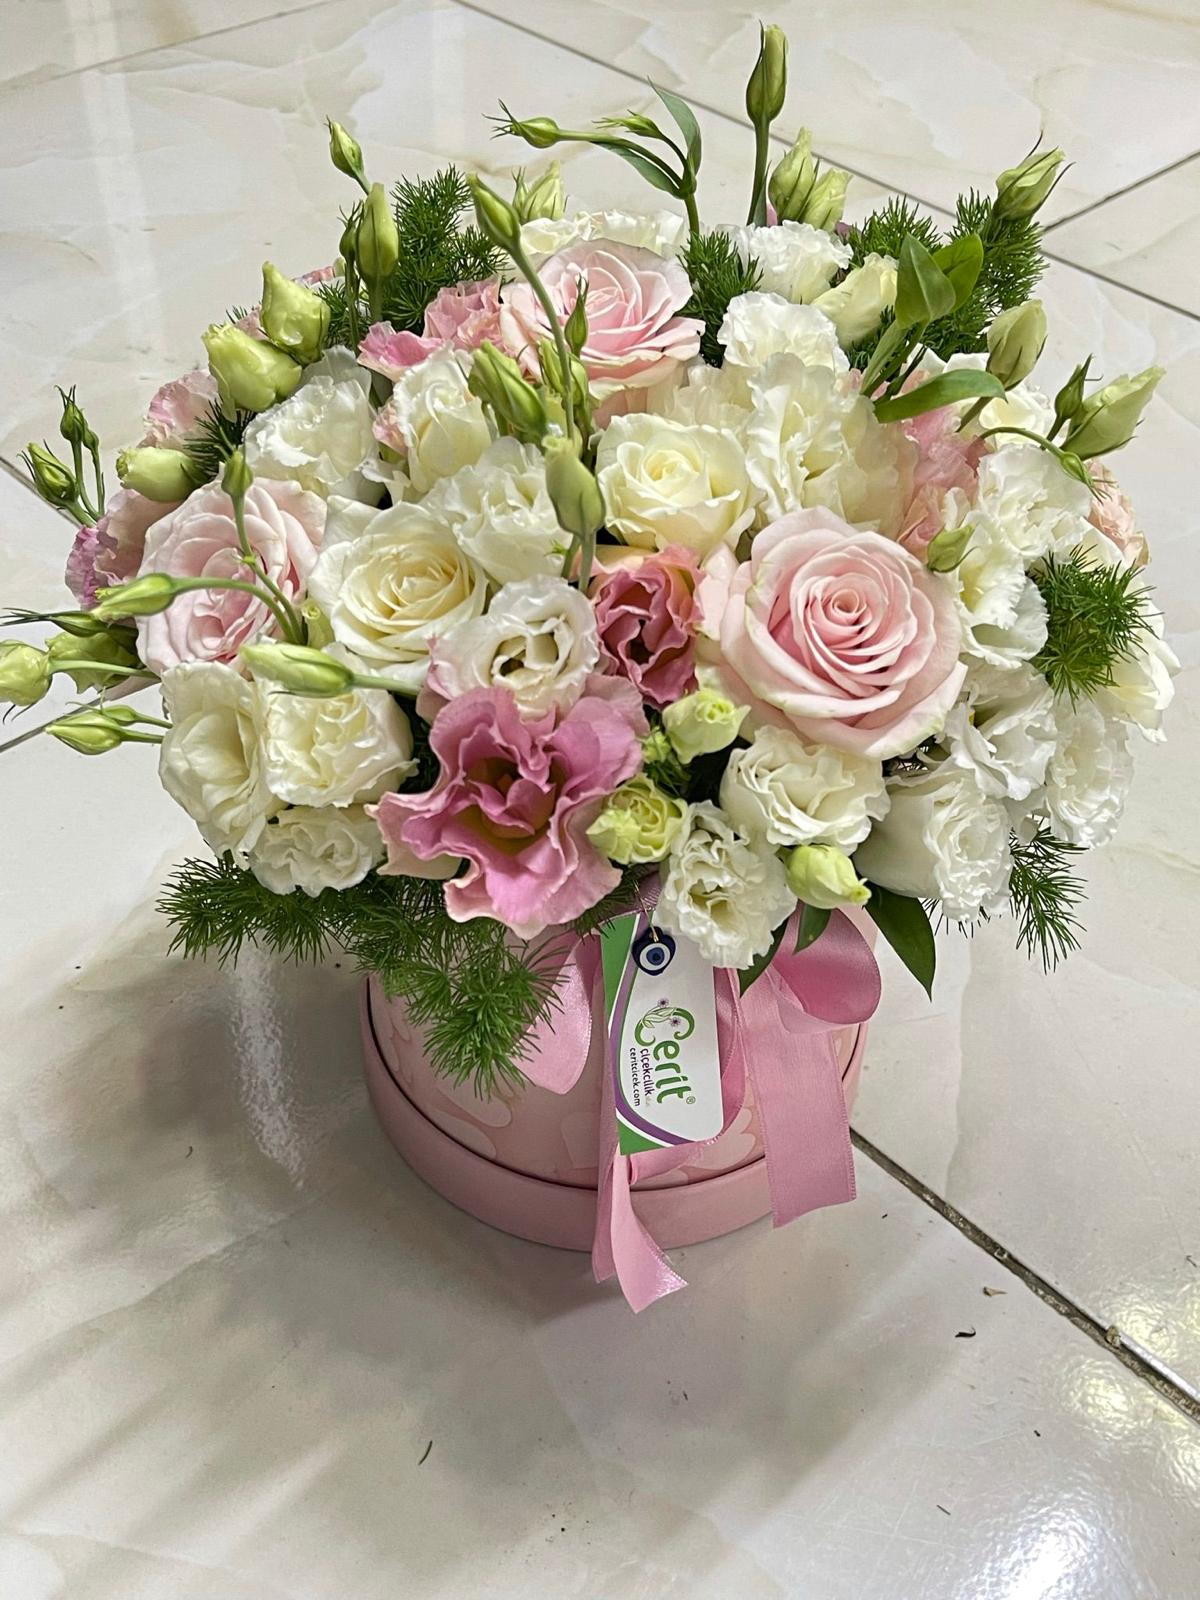  Antalya Blumen Pastel Arrangement in a Pink Box